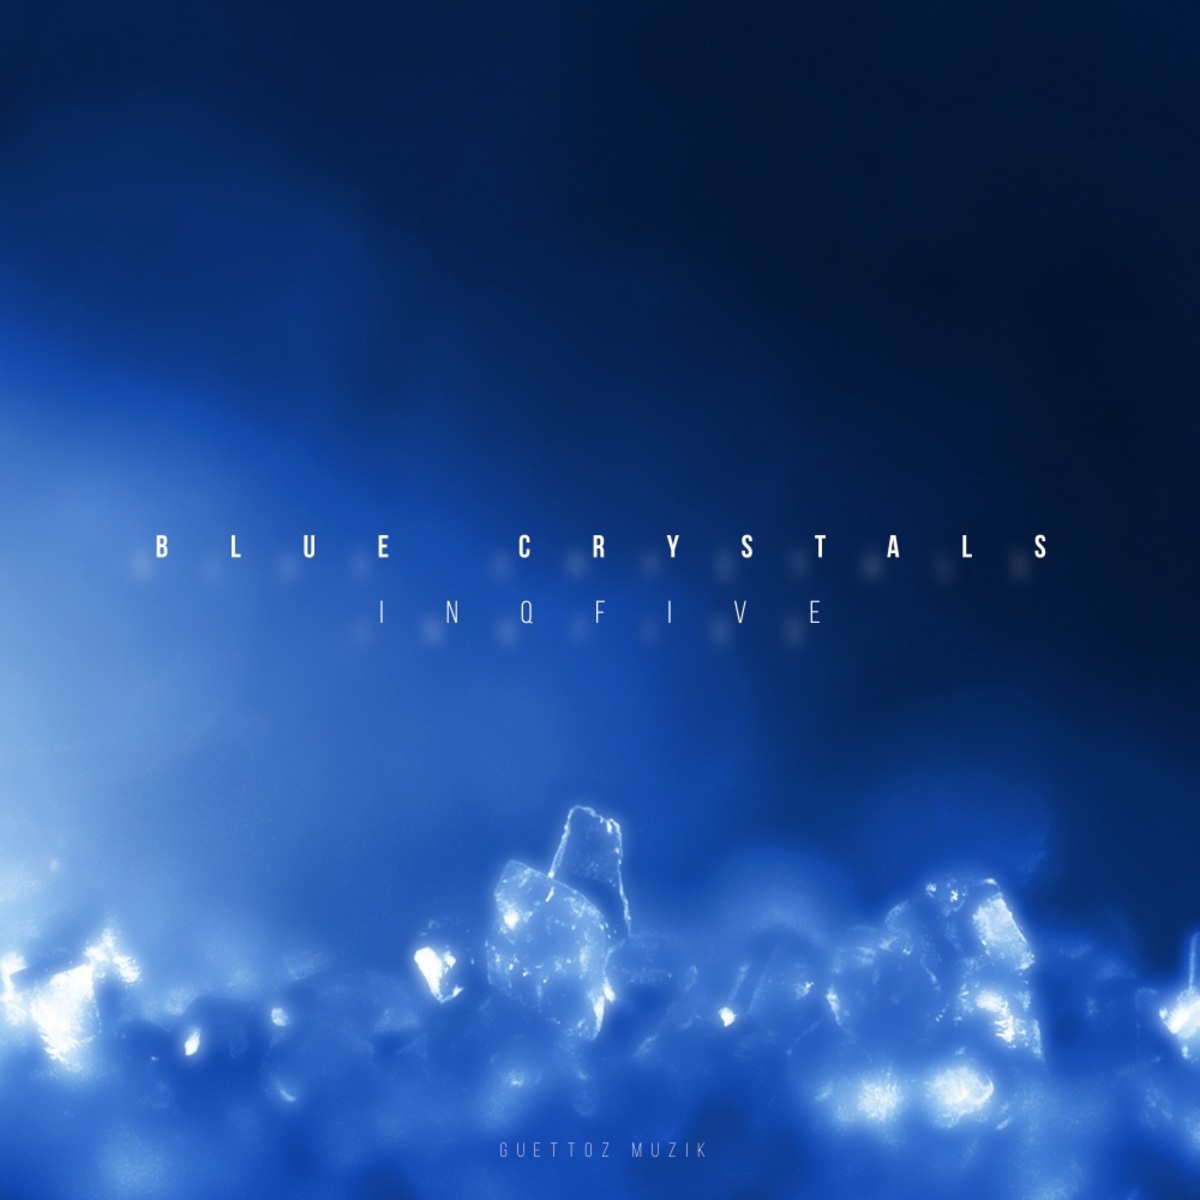 InQfive - Blue Crystals / Guettoz Muzik